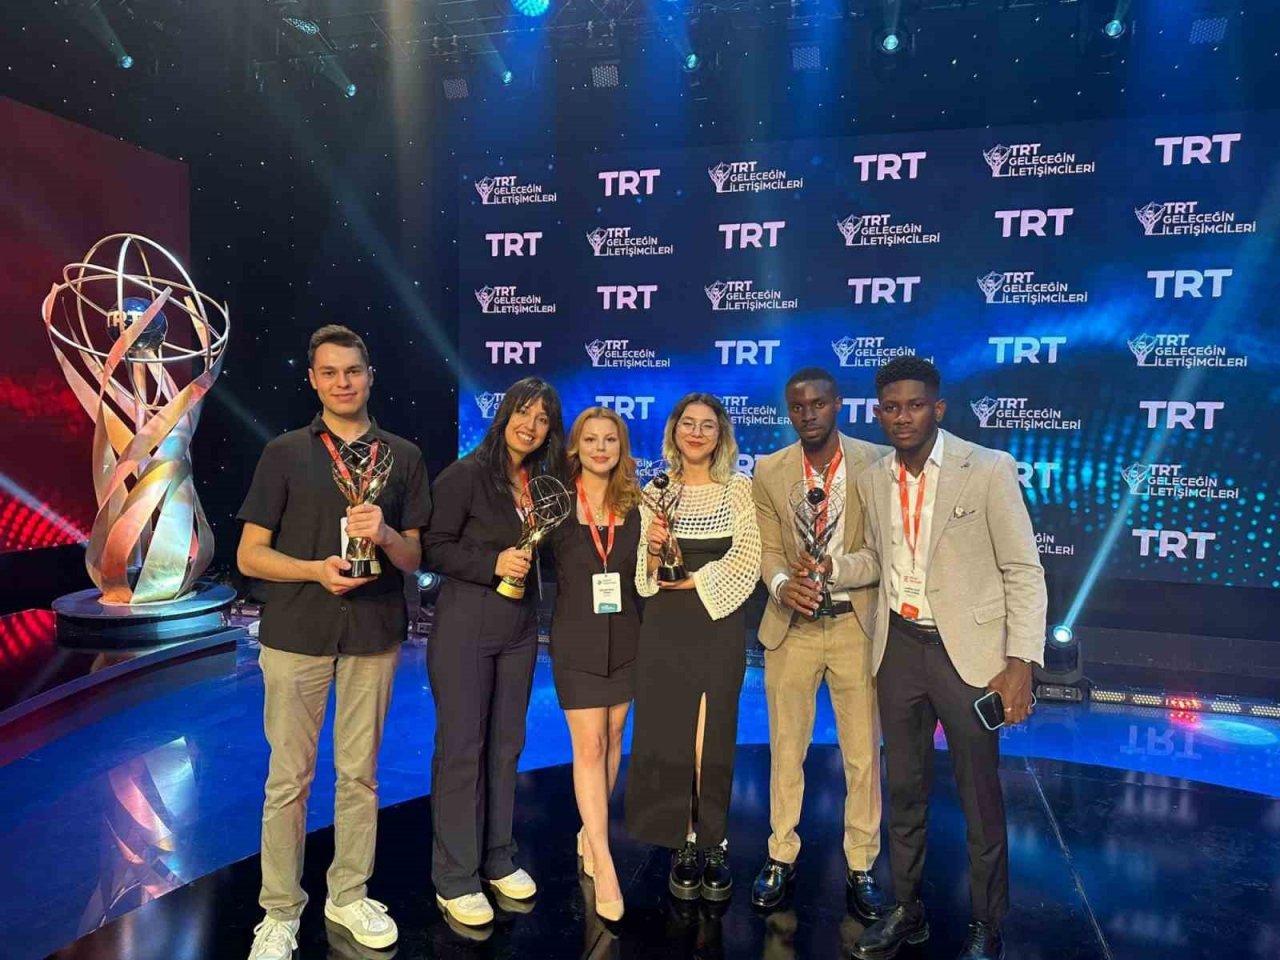 İBF öğrencileri TRT Geleceğin İletişimcileri Yarışması’ndan ödüllerle döndü